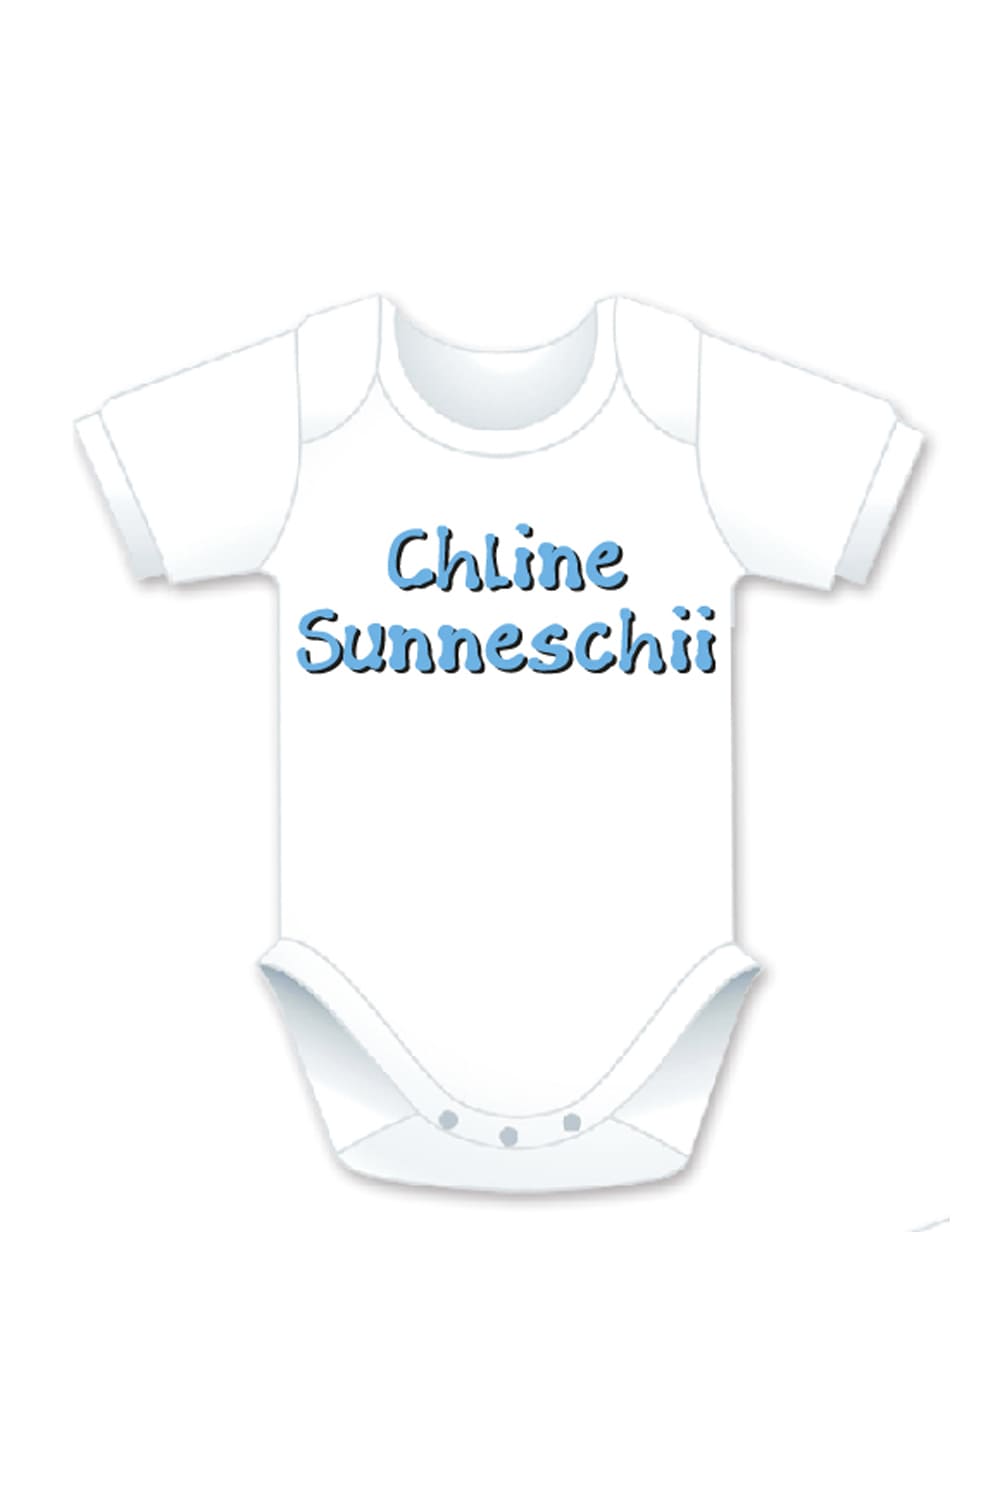 Dieser Baby Body ist ein echt suesses und tolles Geschenk für ein Junge. Der Baby Body mit der Aufschrift: Chliine Sunneschii , ist einfach nur zuckersuess. Ein perfektes Geschenk zur Geburt oder als Mitbringsel. Der Chliine Sunneschii Baby Body ist in zwei Textilfarben, blau und zwei diversen Groessen erhaeltlich.